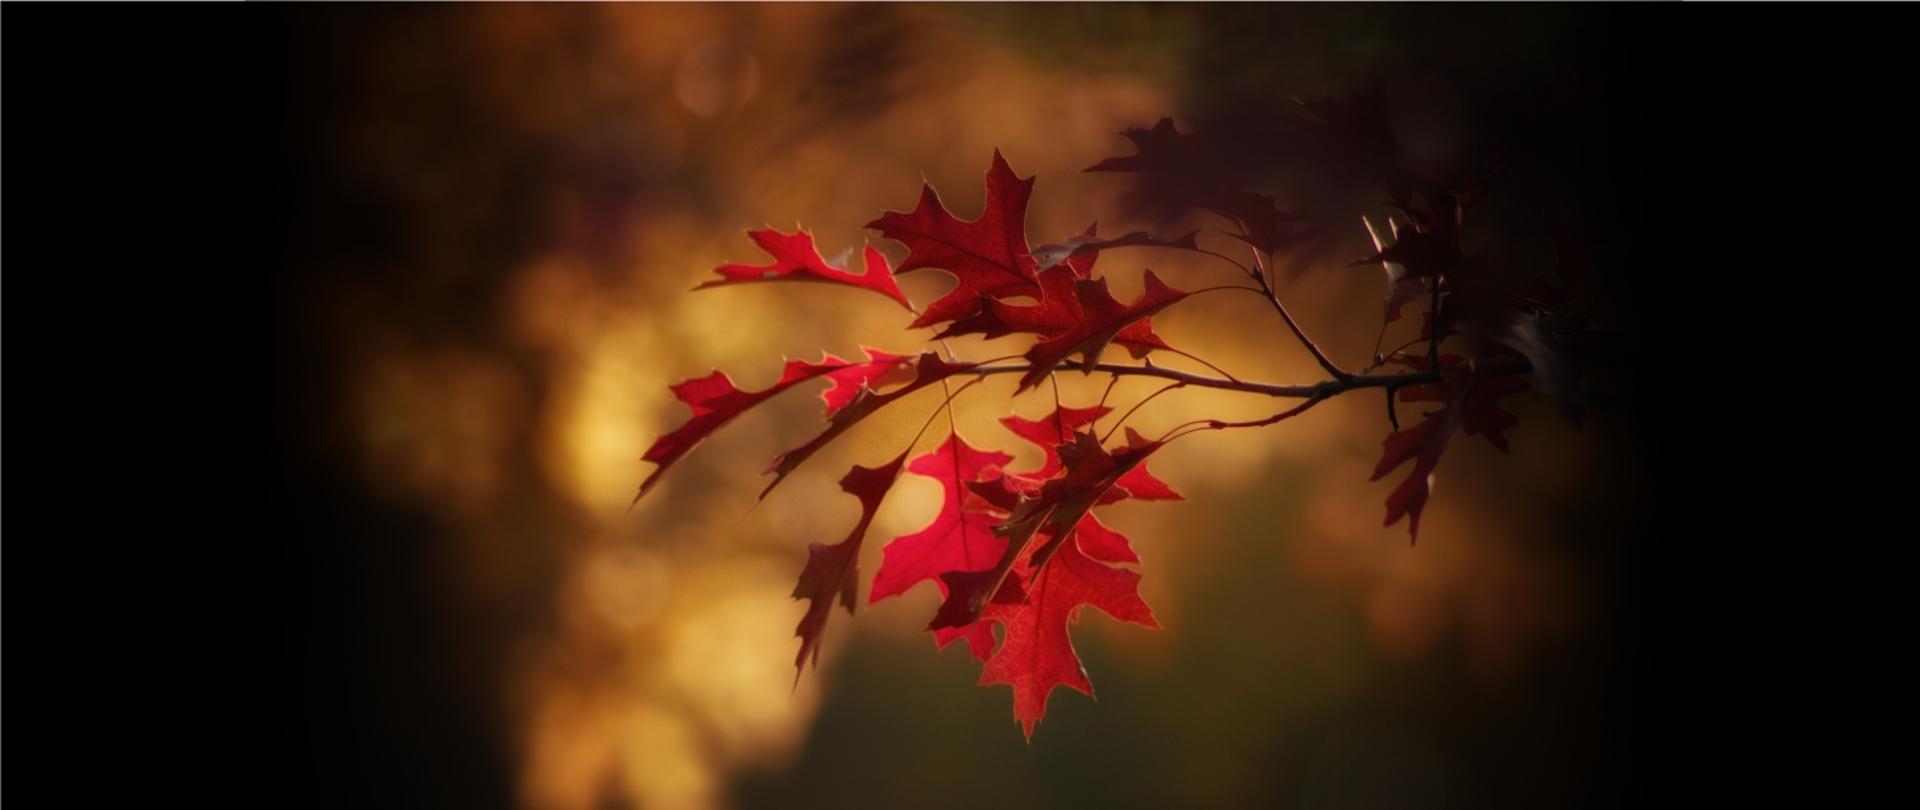 Zdjęcie przedstawia jesienny liść klonu